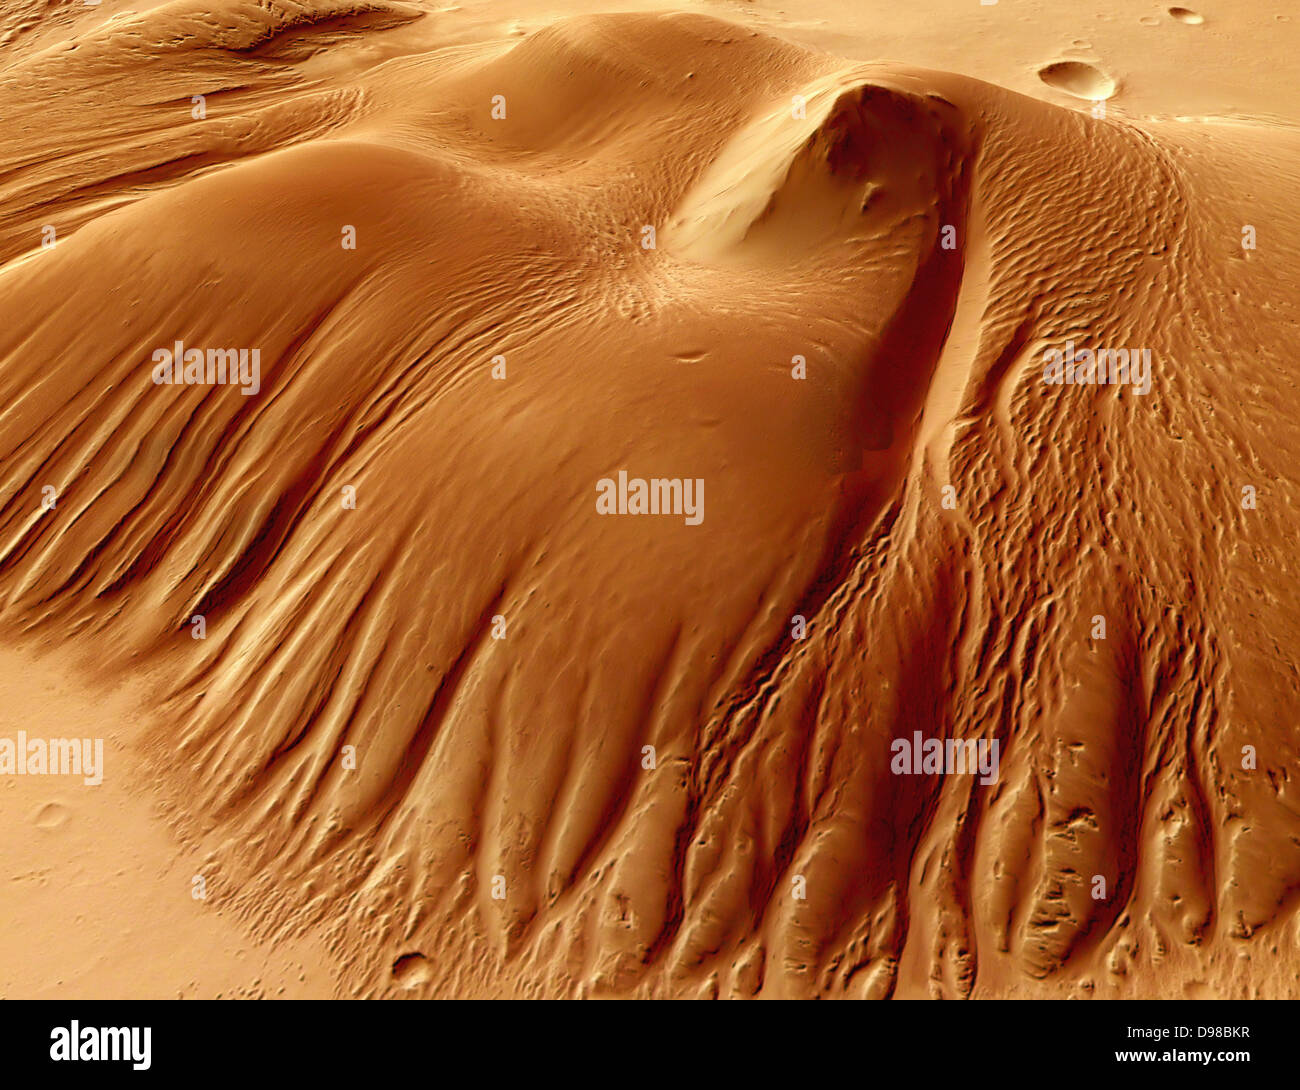 Randonnée dans le cratère Nicholson. La couleur d'un point de vue sur 55 km de long et 37 km de large massif au milieu de la Nicholson crater - vue détaillée. Nord est au top. Nicholson est un cratère sur Mars centrée à 0,1° N et 164,5° O. Il est à 62 milles de large (100 km), et situé dans le quadrangle de Memnonia. Nicholson est un bon marqueur pour l'équateur car elle se situe presque directement sur l'équateur. Il est nommé d'après Seth Barnes Nicholson, un astronome américain. Banque D'Images